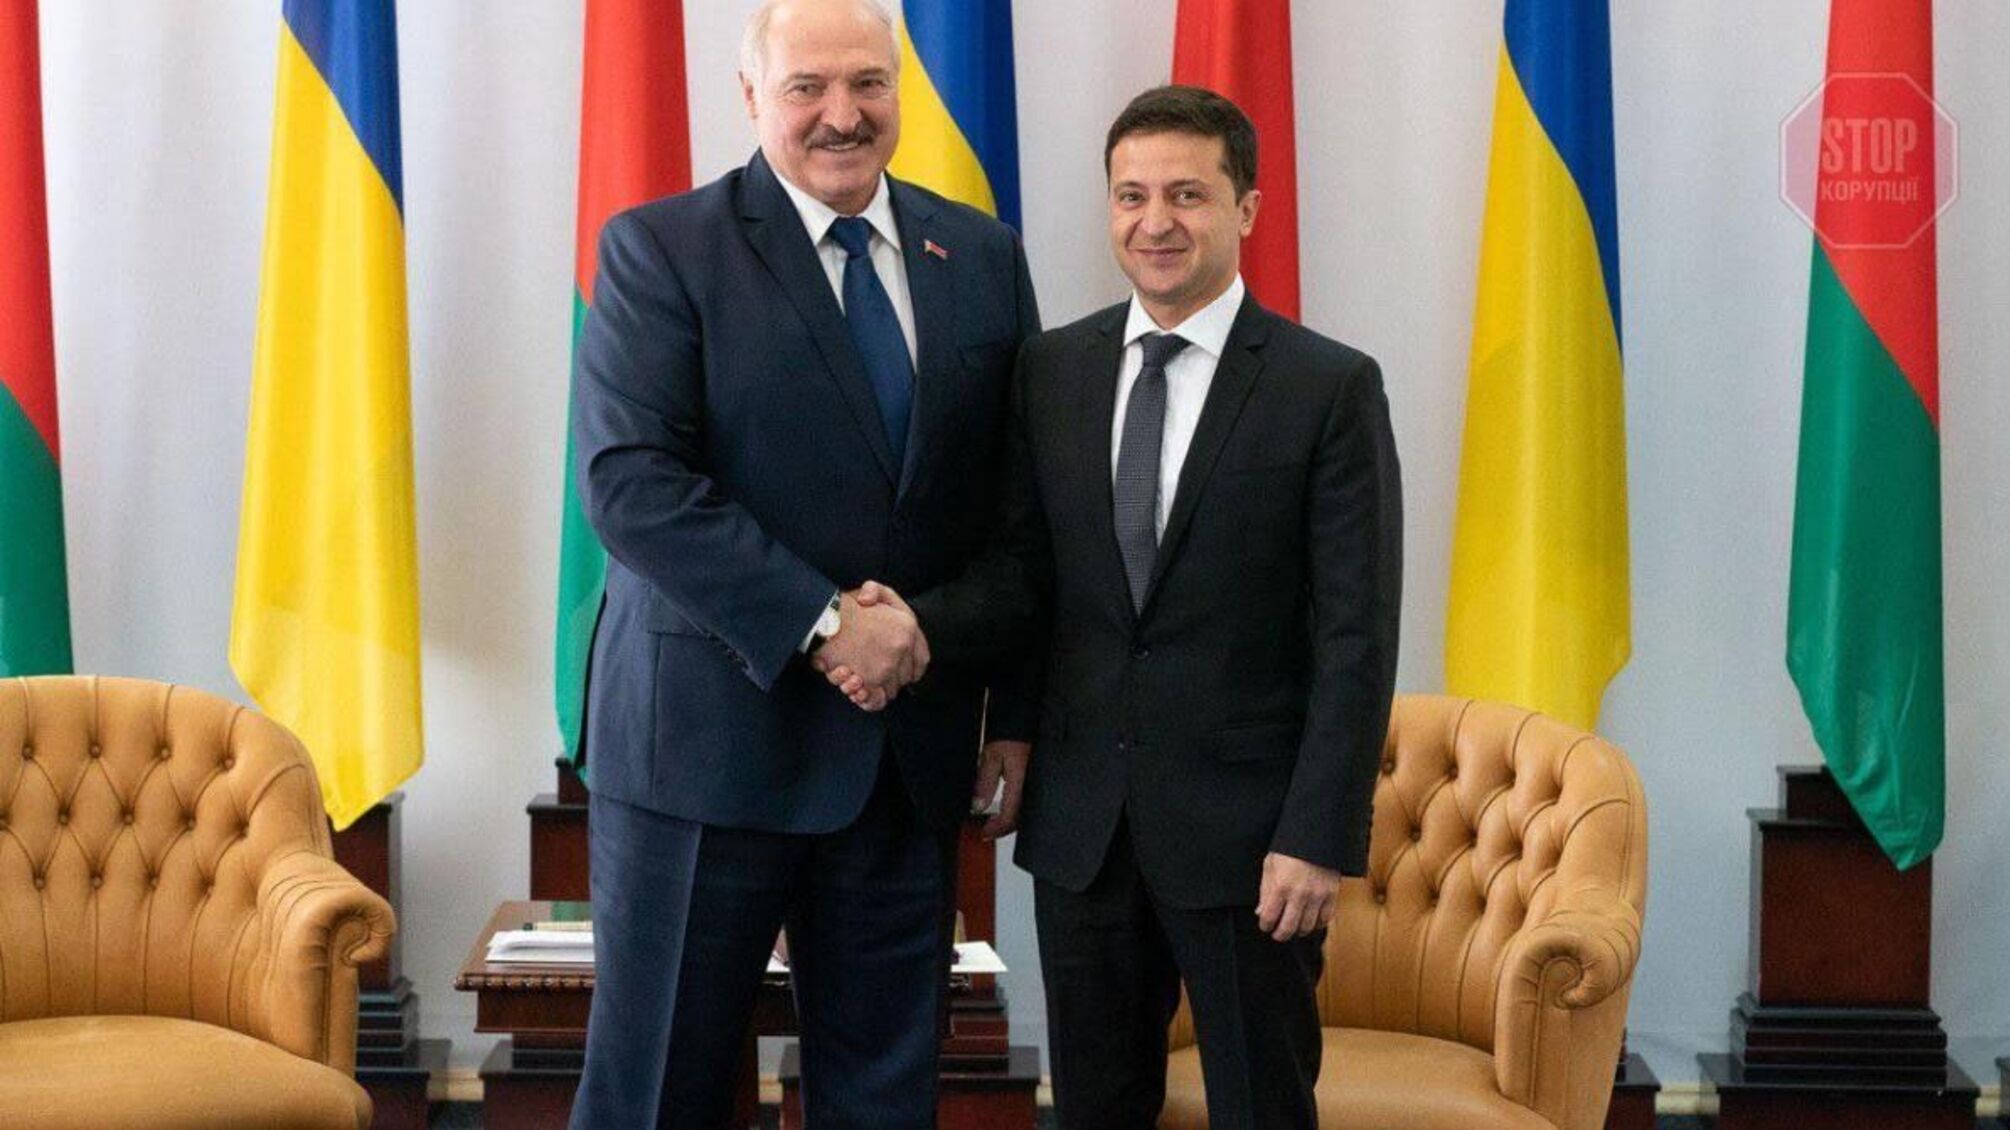 З коліна б я з ним не вітався, — Лукашенко про відносини з Зеленським 